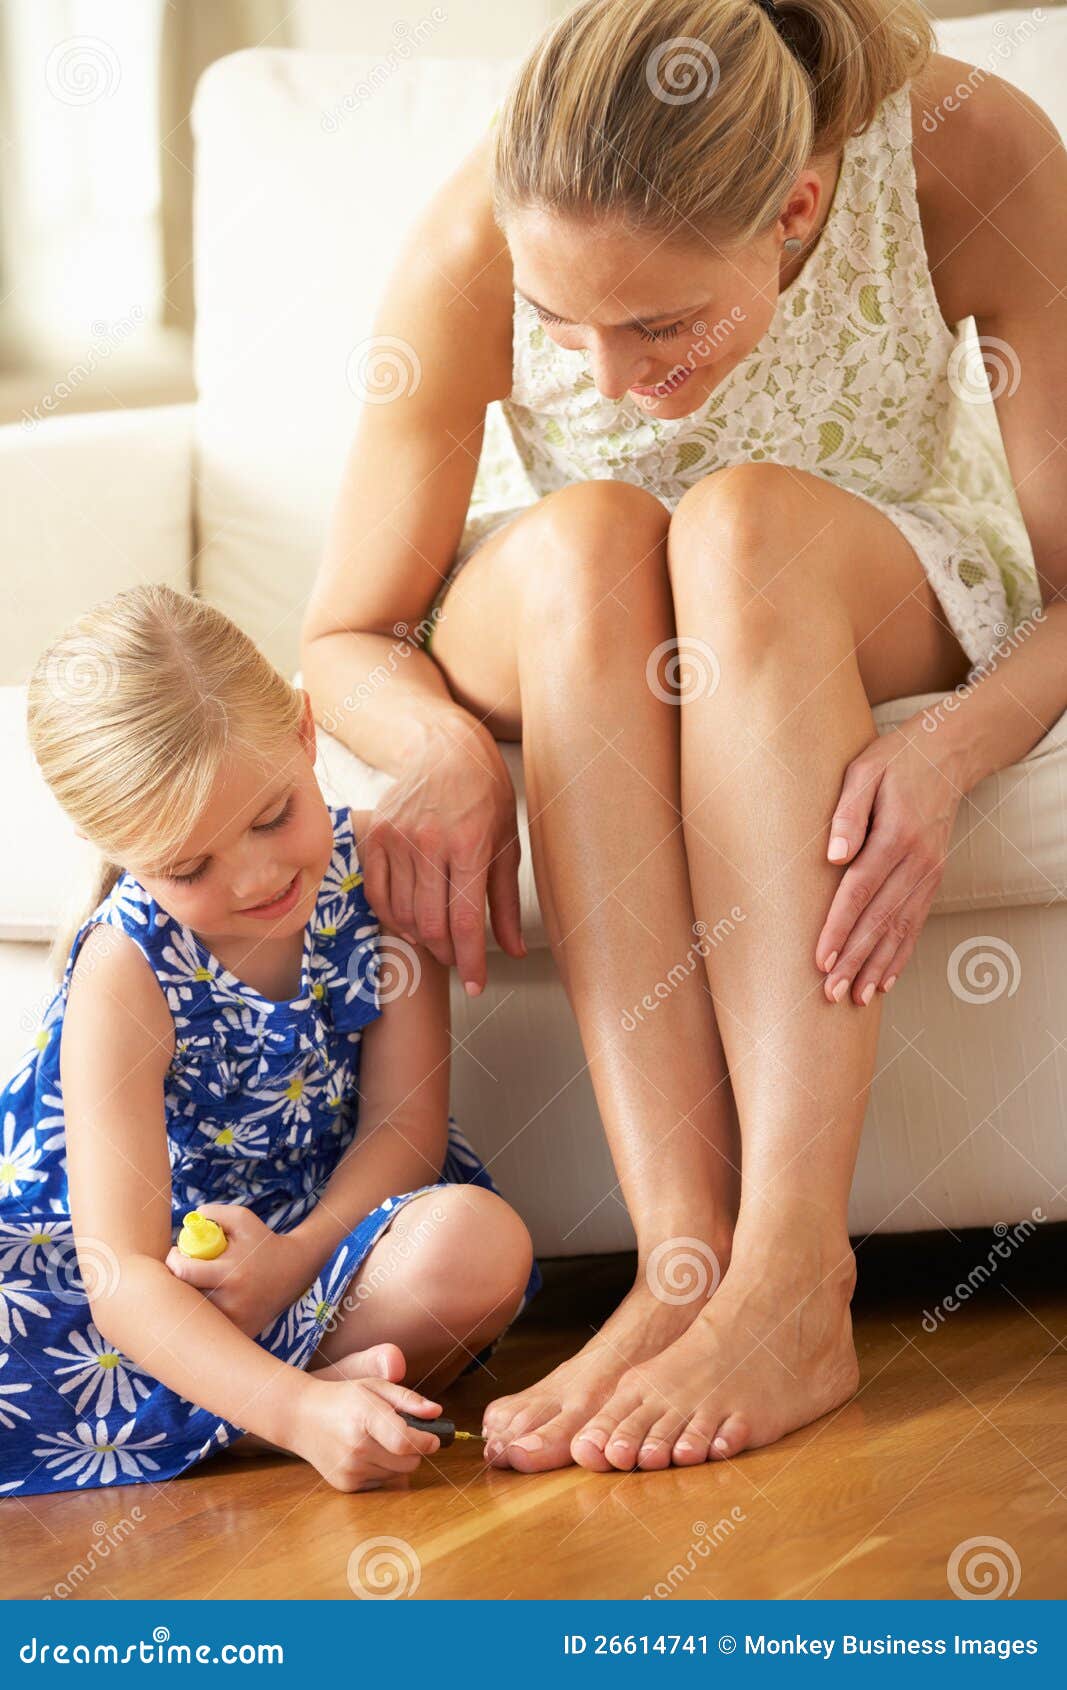 Ребенка заставляли лизать. Детские ступни девочек облизывают. Девочка красит ногти на ногах маме. Мать и дочь ступни. Стопы детей девочек.